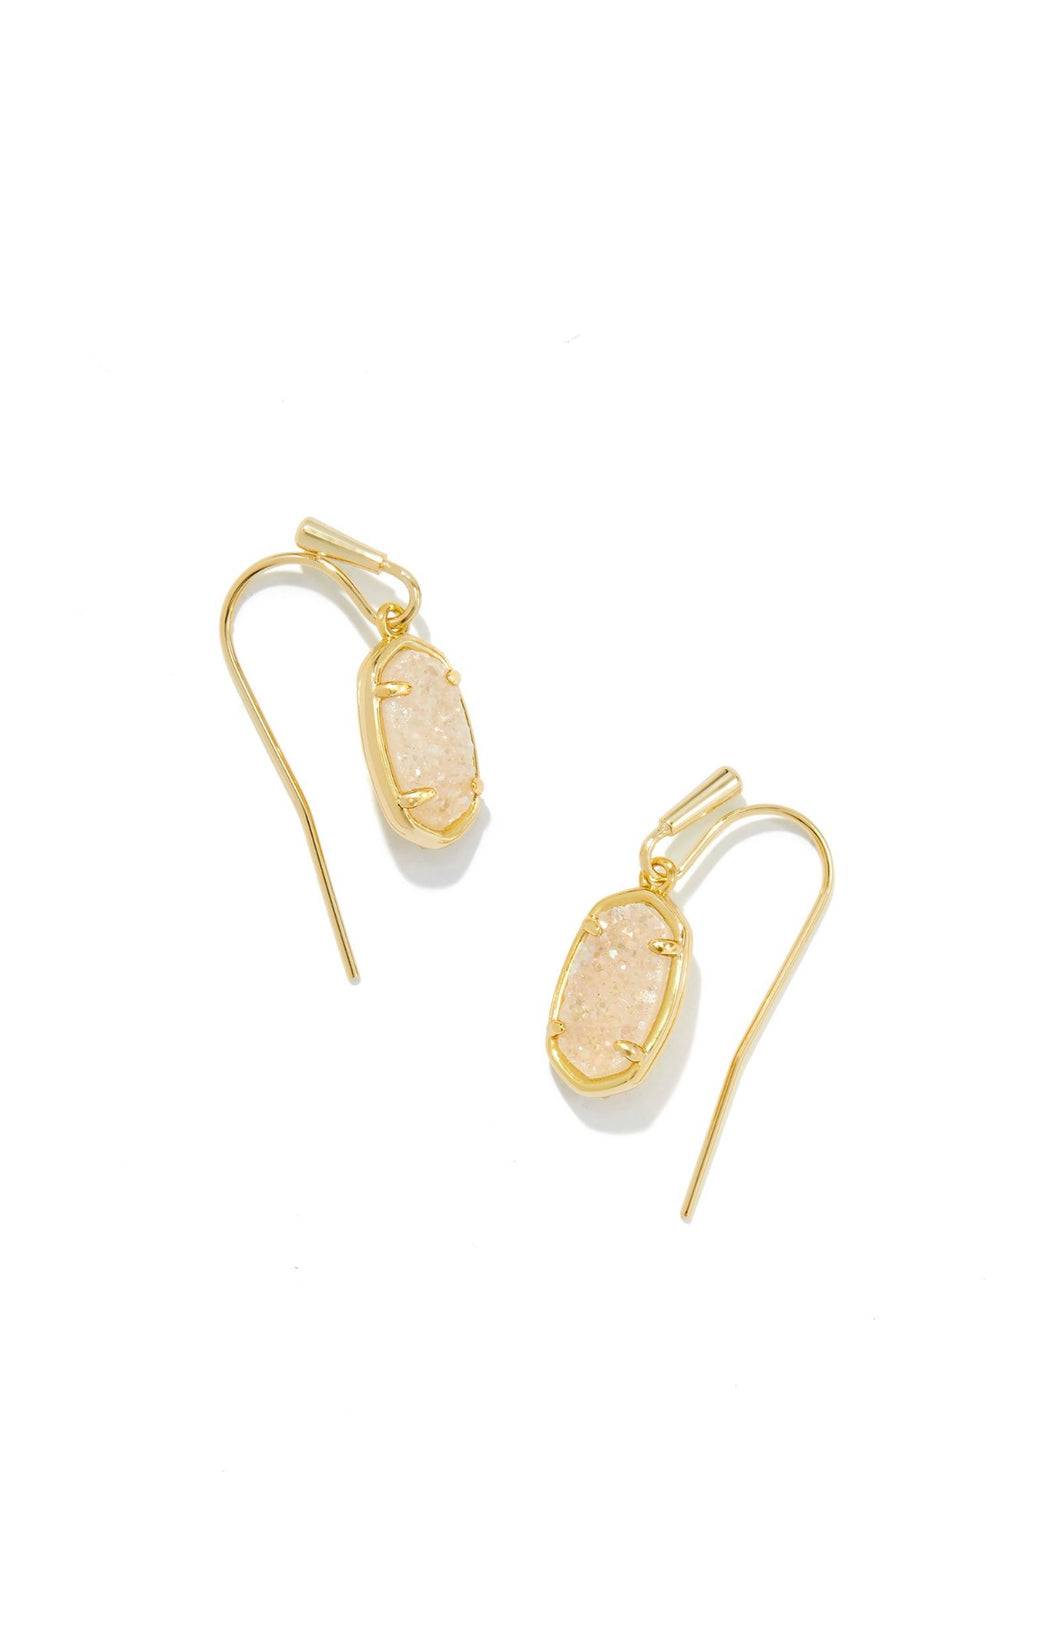 Kendra Scott: Grayson Drop Earrings in Gold Iridescent Drusy